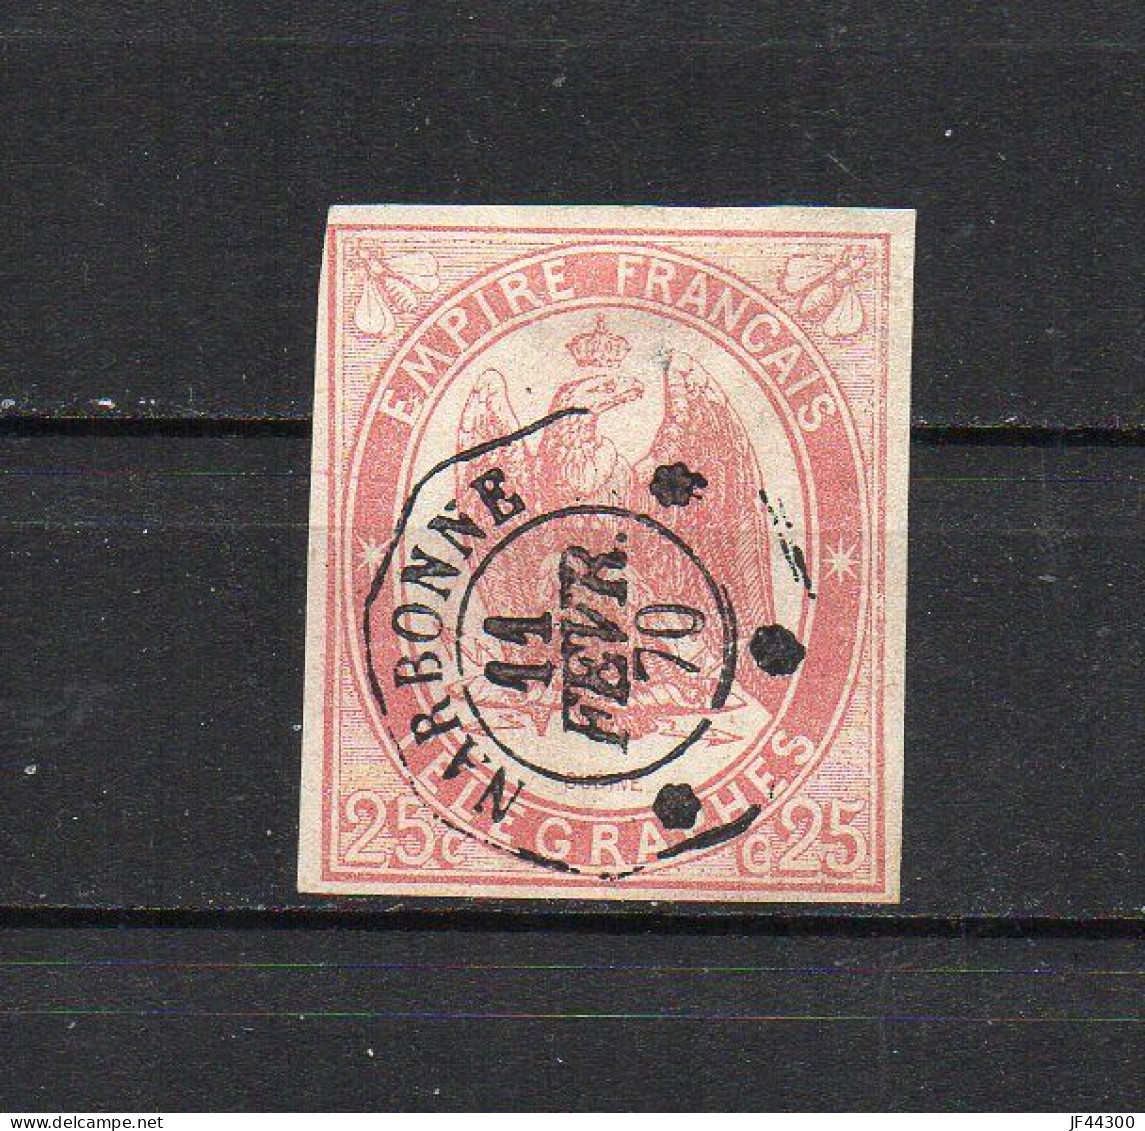 FRANCE - FR2022 - Timbre Télégraphe - 1868 - N° 1 - Oblitéré - Telegraphie Und Telefon